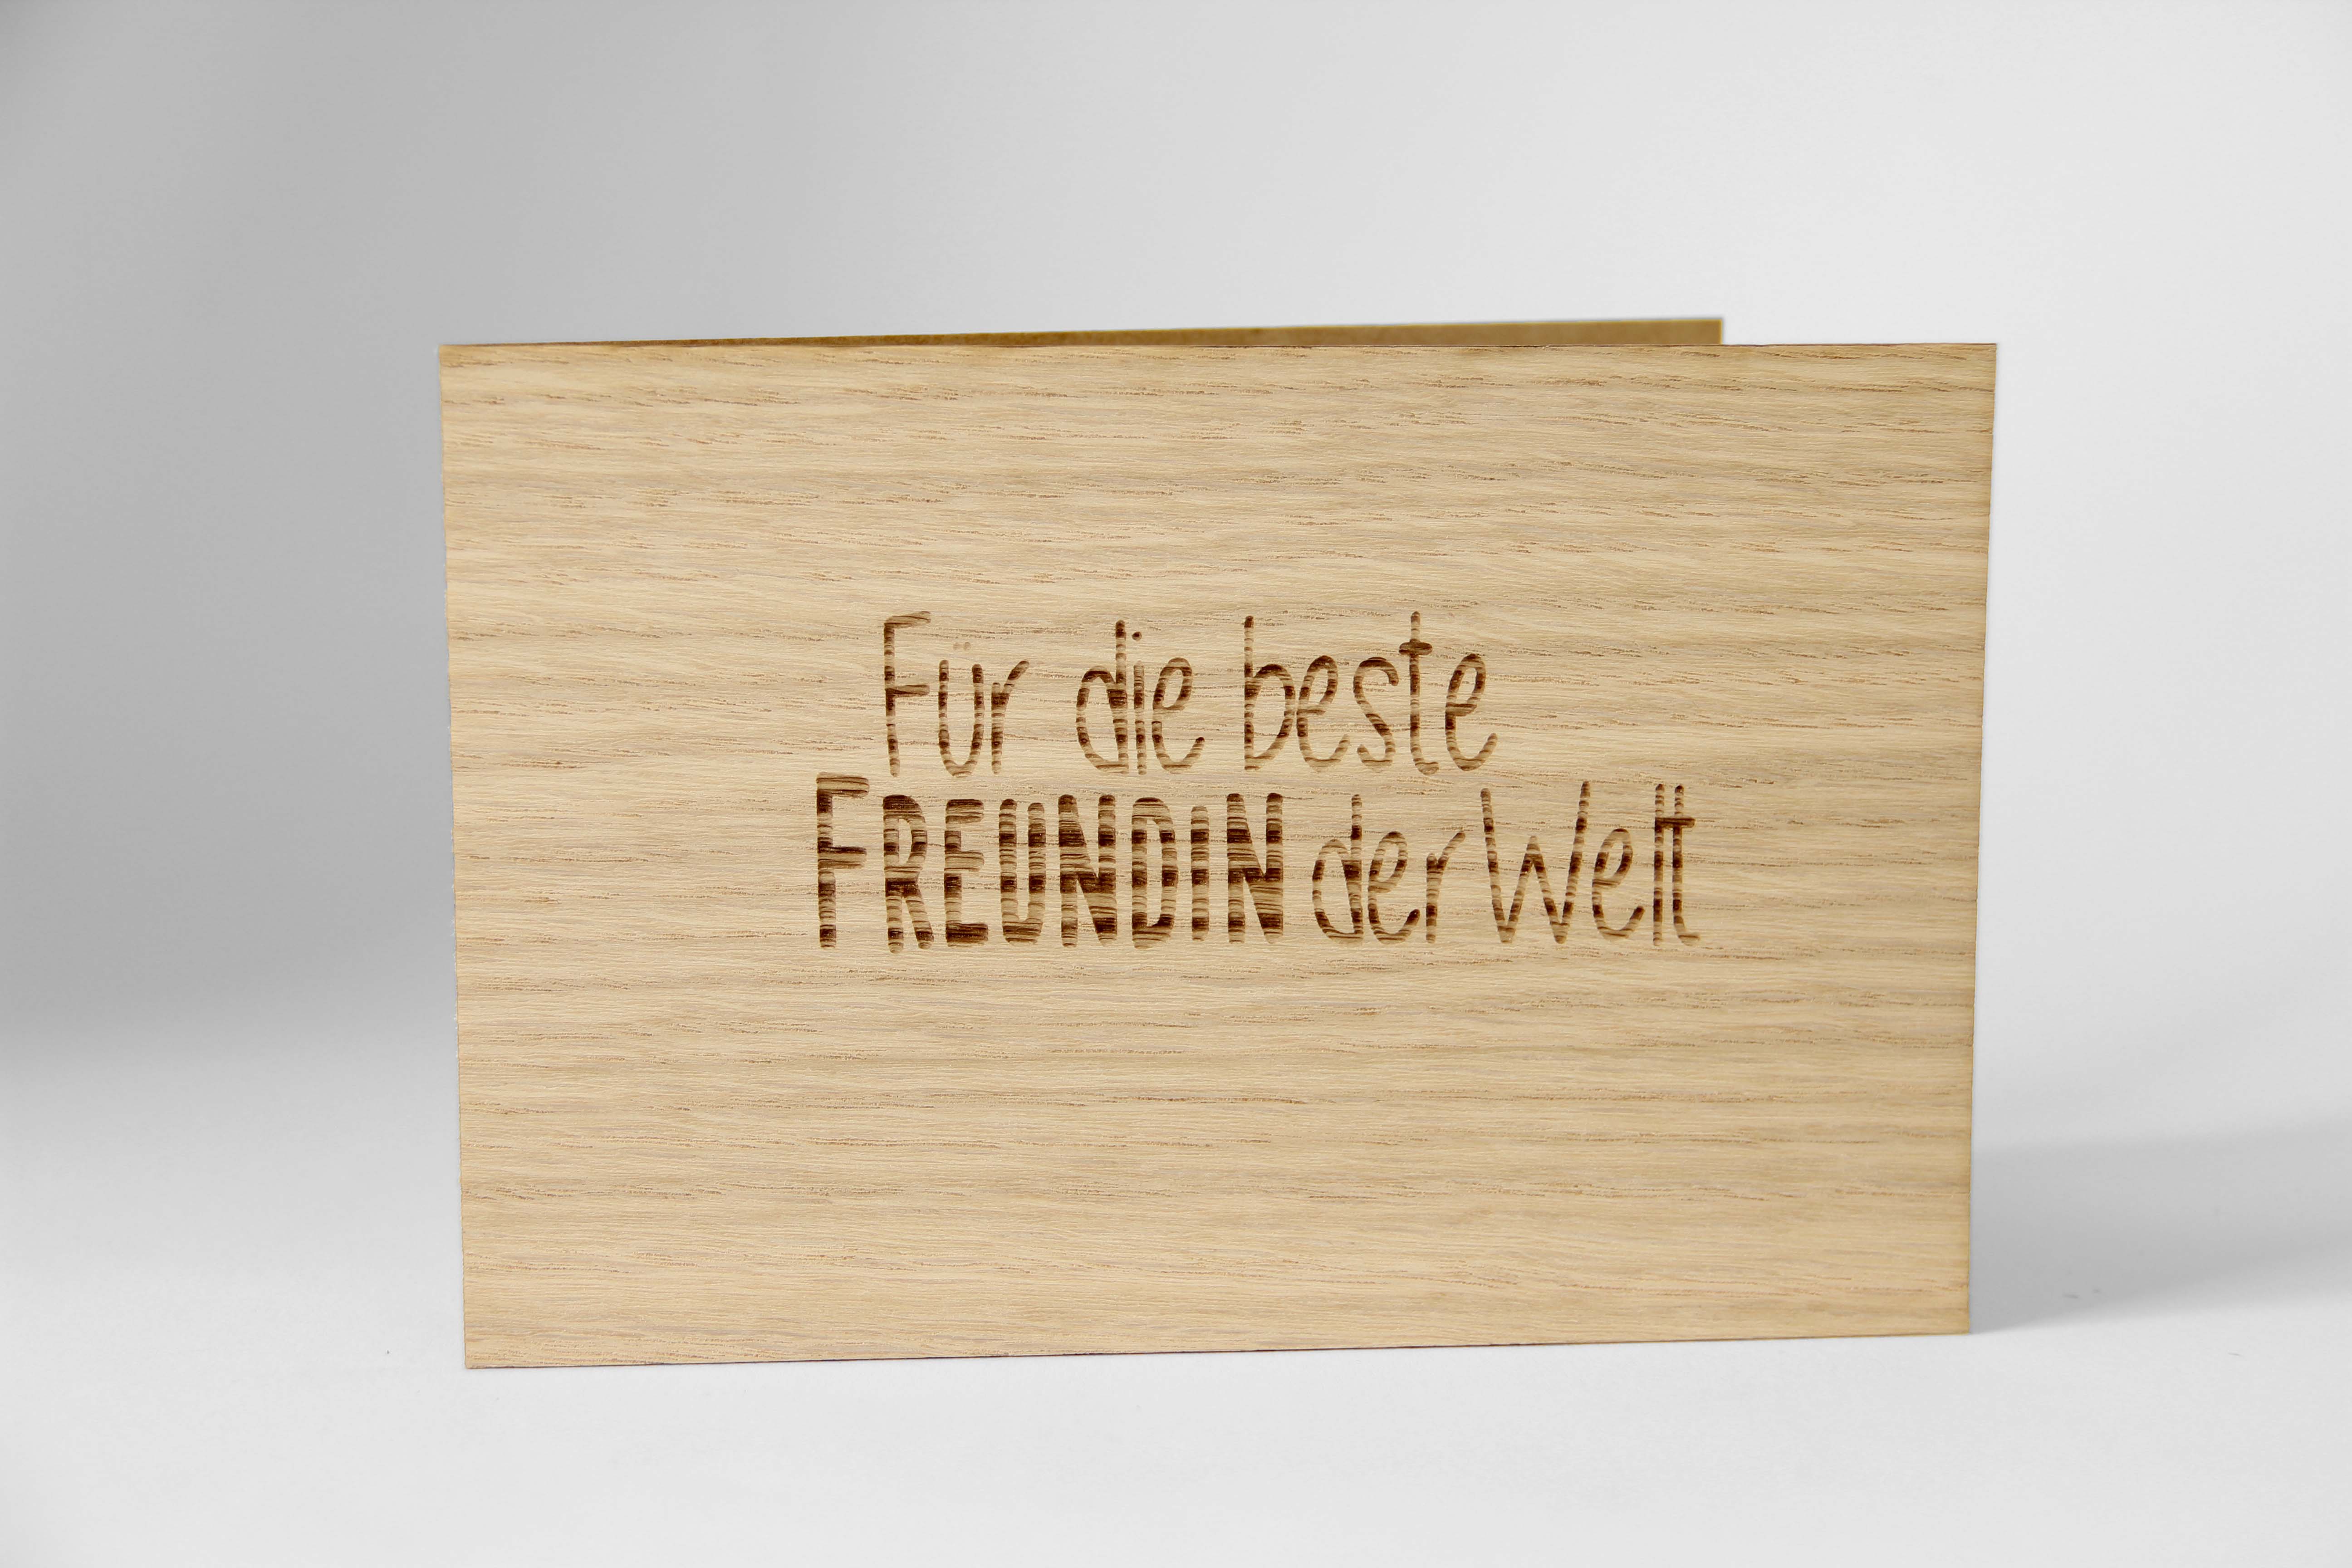 Holzgrusskarten - Geschenkkarte "Für die beste Freundin der Welt" aus Eiche, Dankeskarte